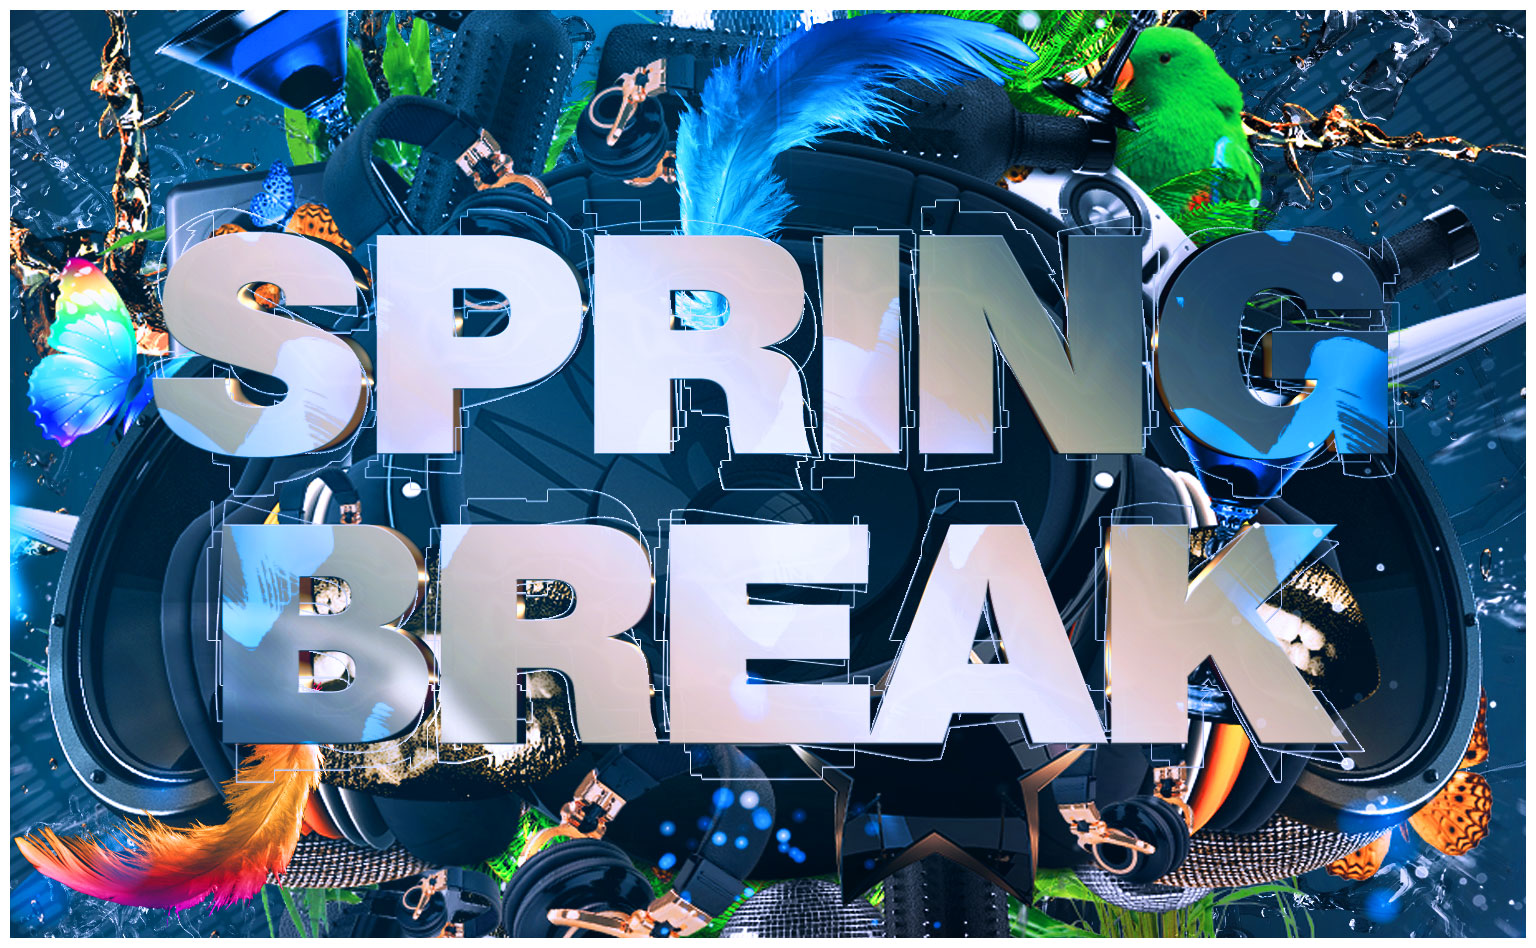 Spring Break am 15.04.2023 mit DJ Chris K. ab 22 Uhr im Ballhaus Spandau